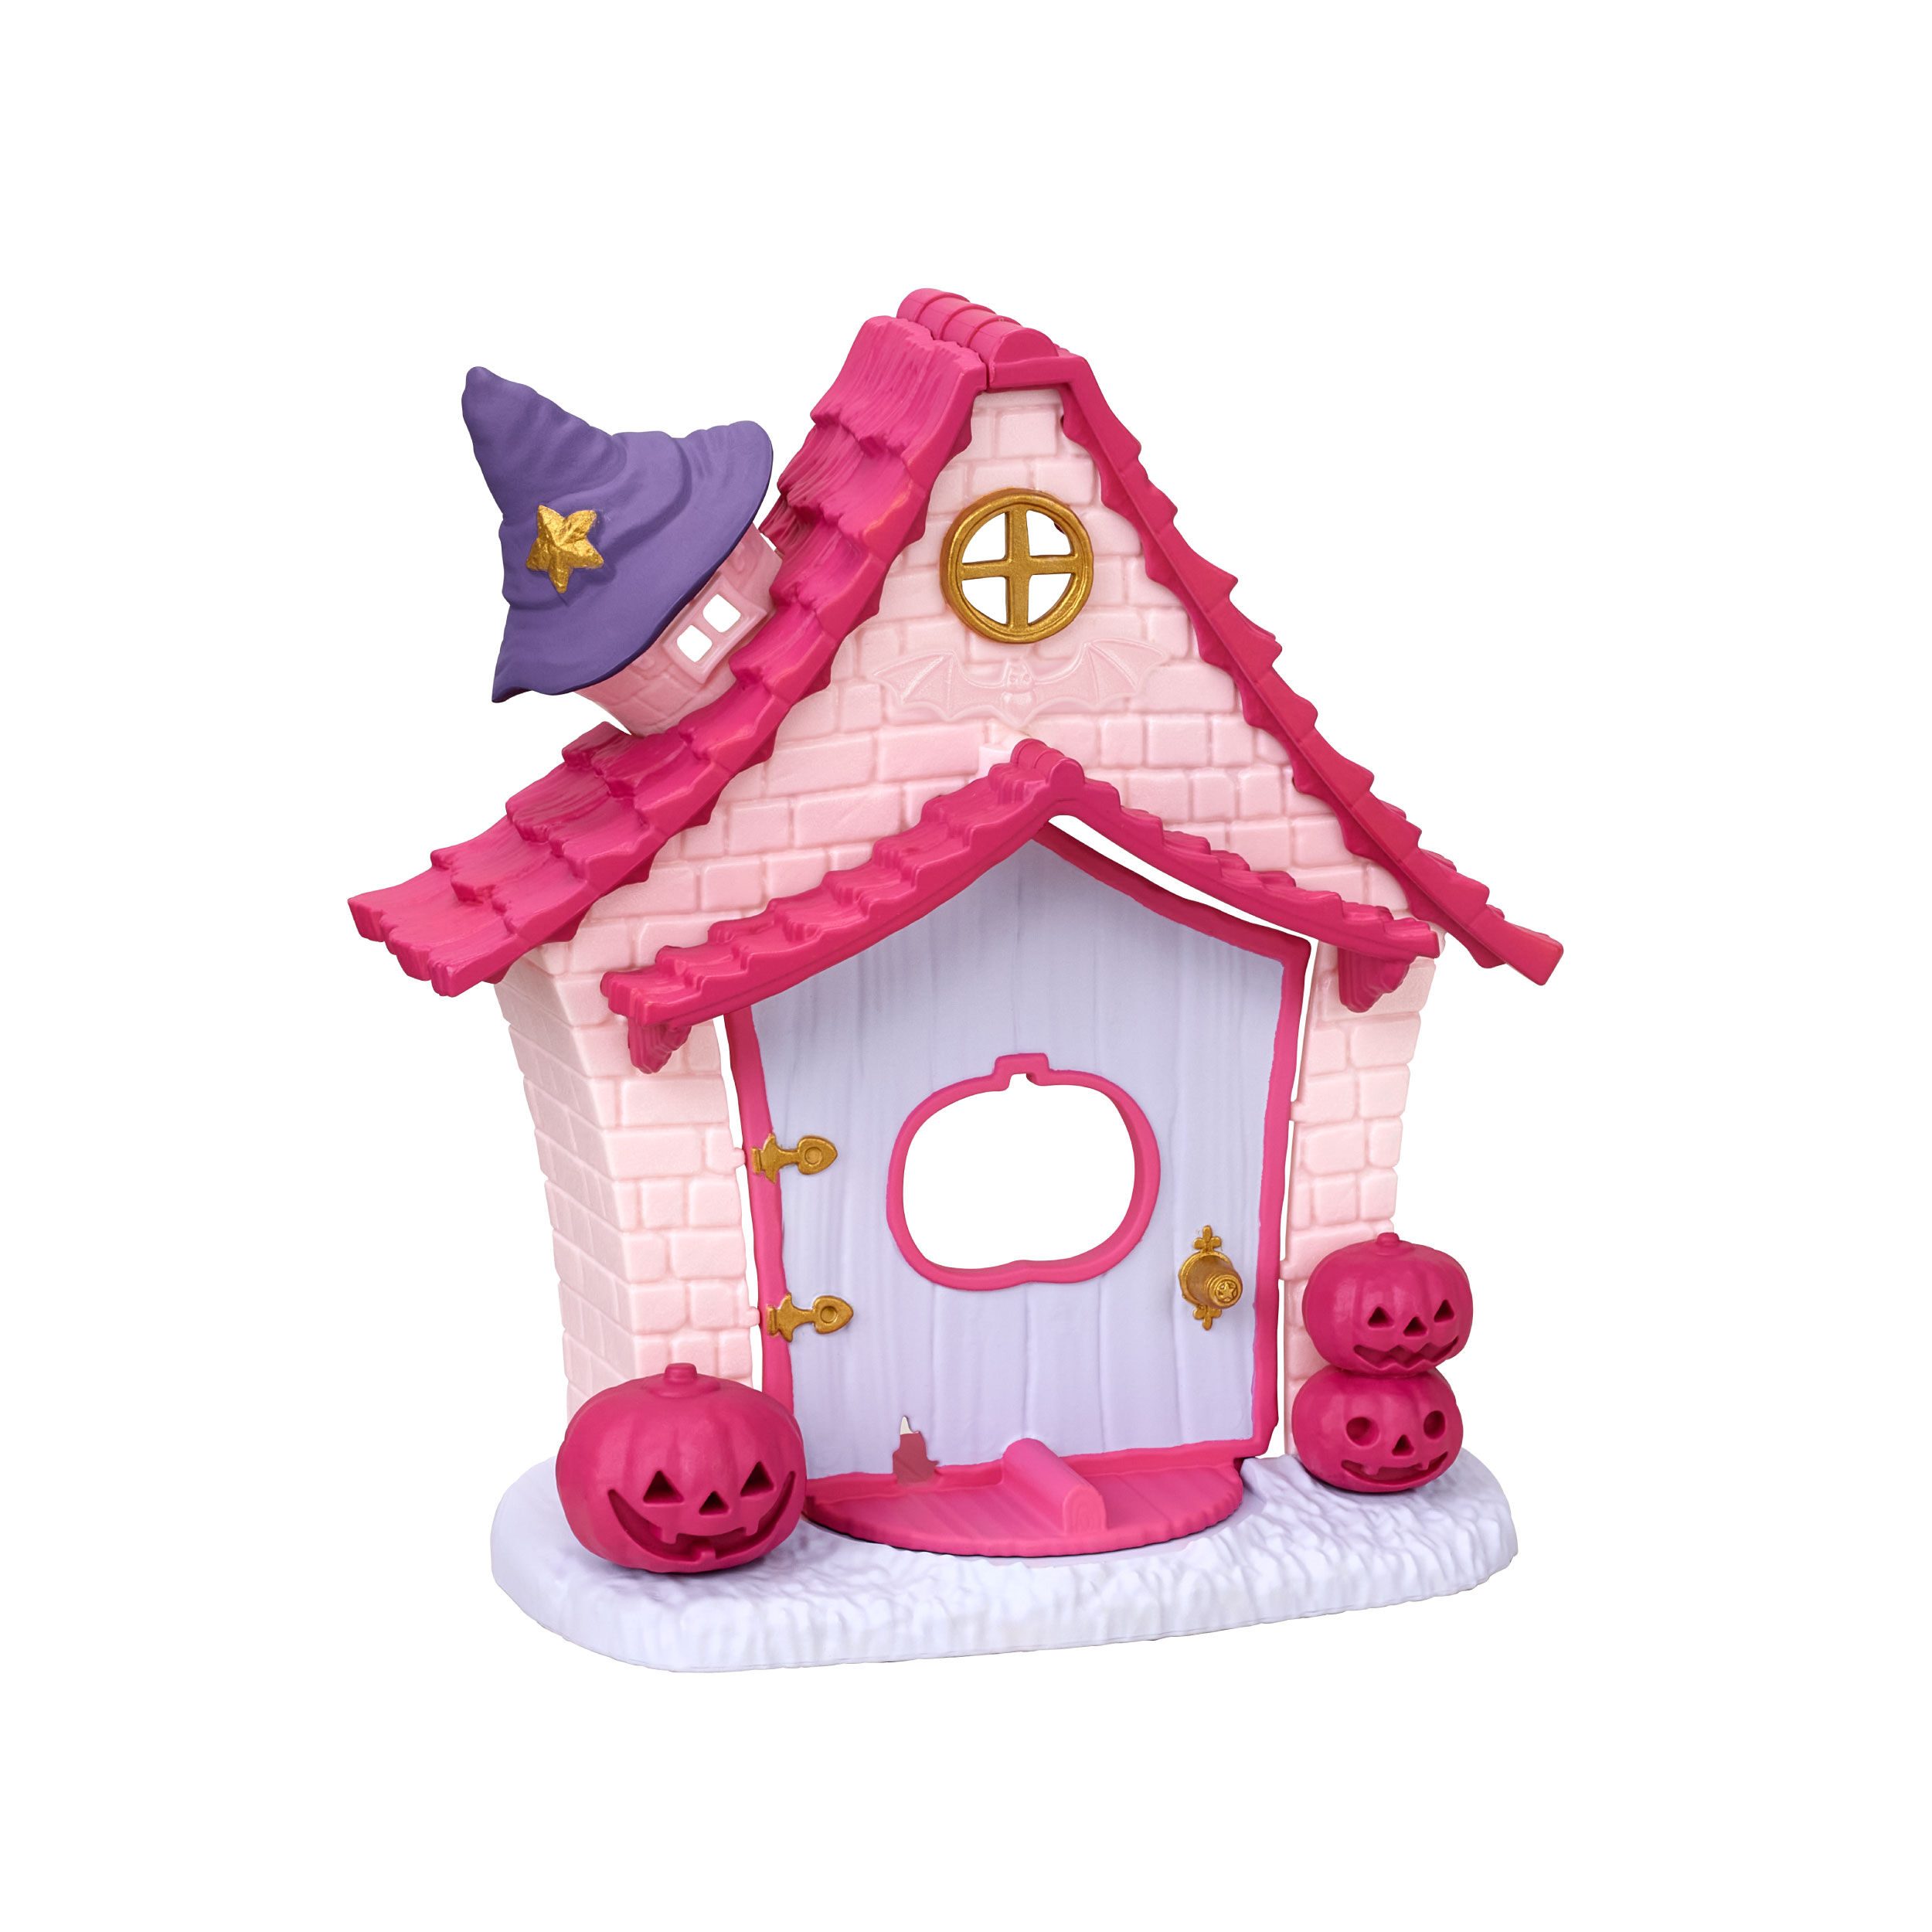 マシュマロネズミのハロウィンハウスセット / 家具と人形セット 